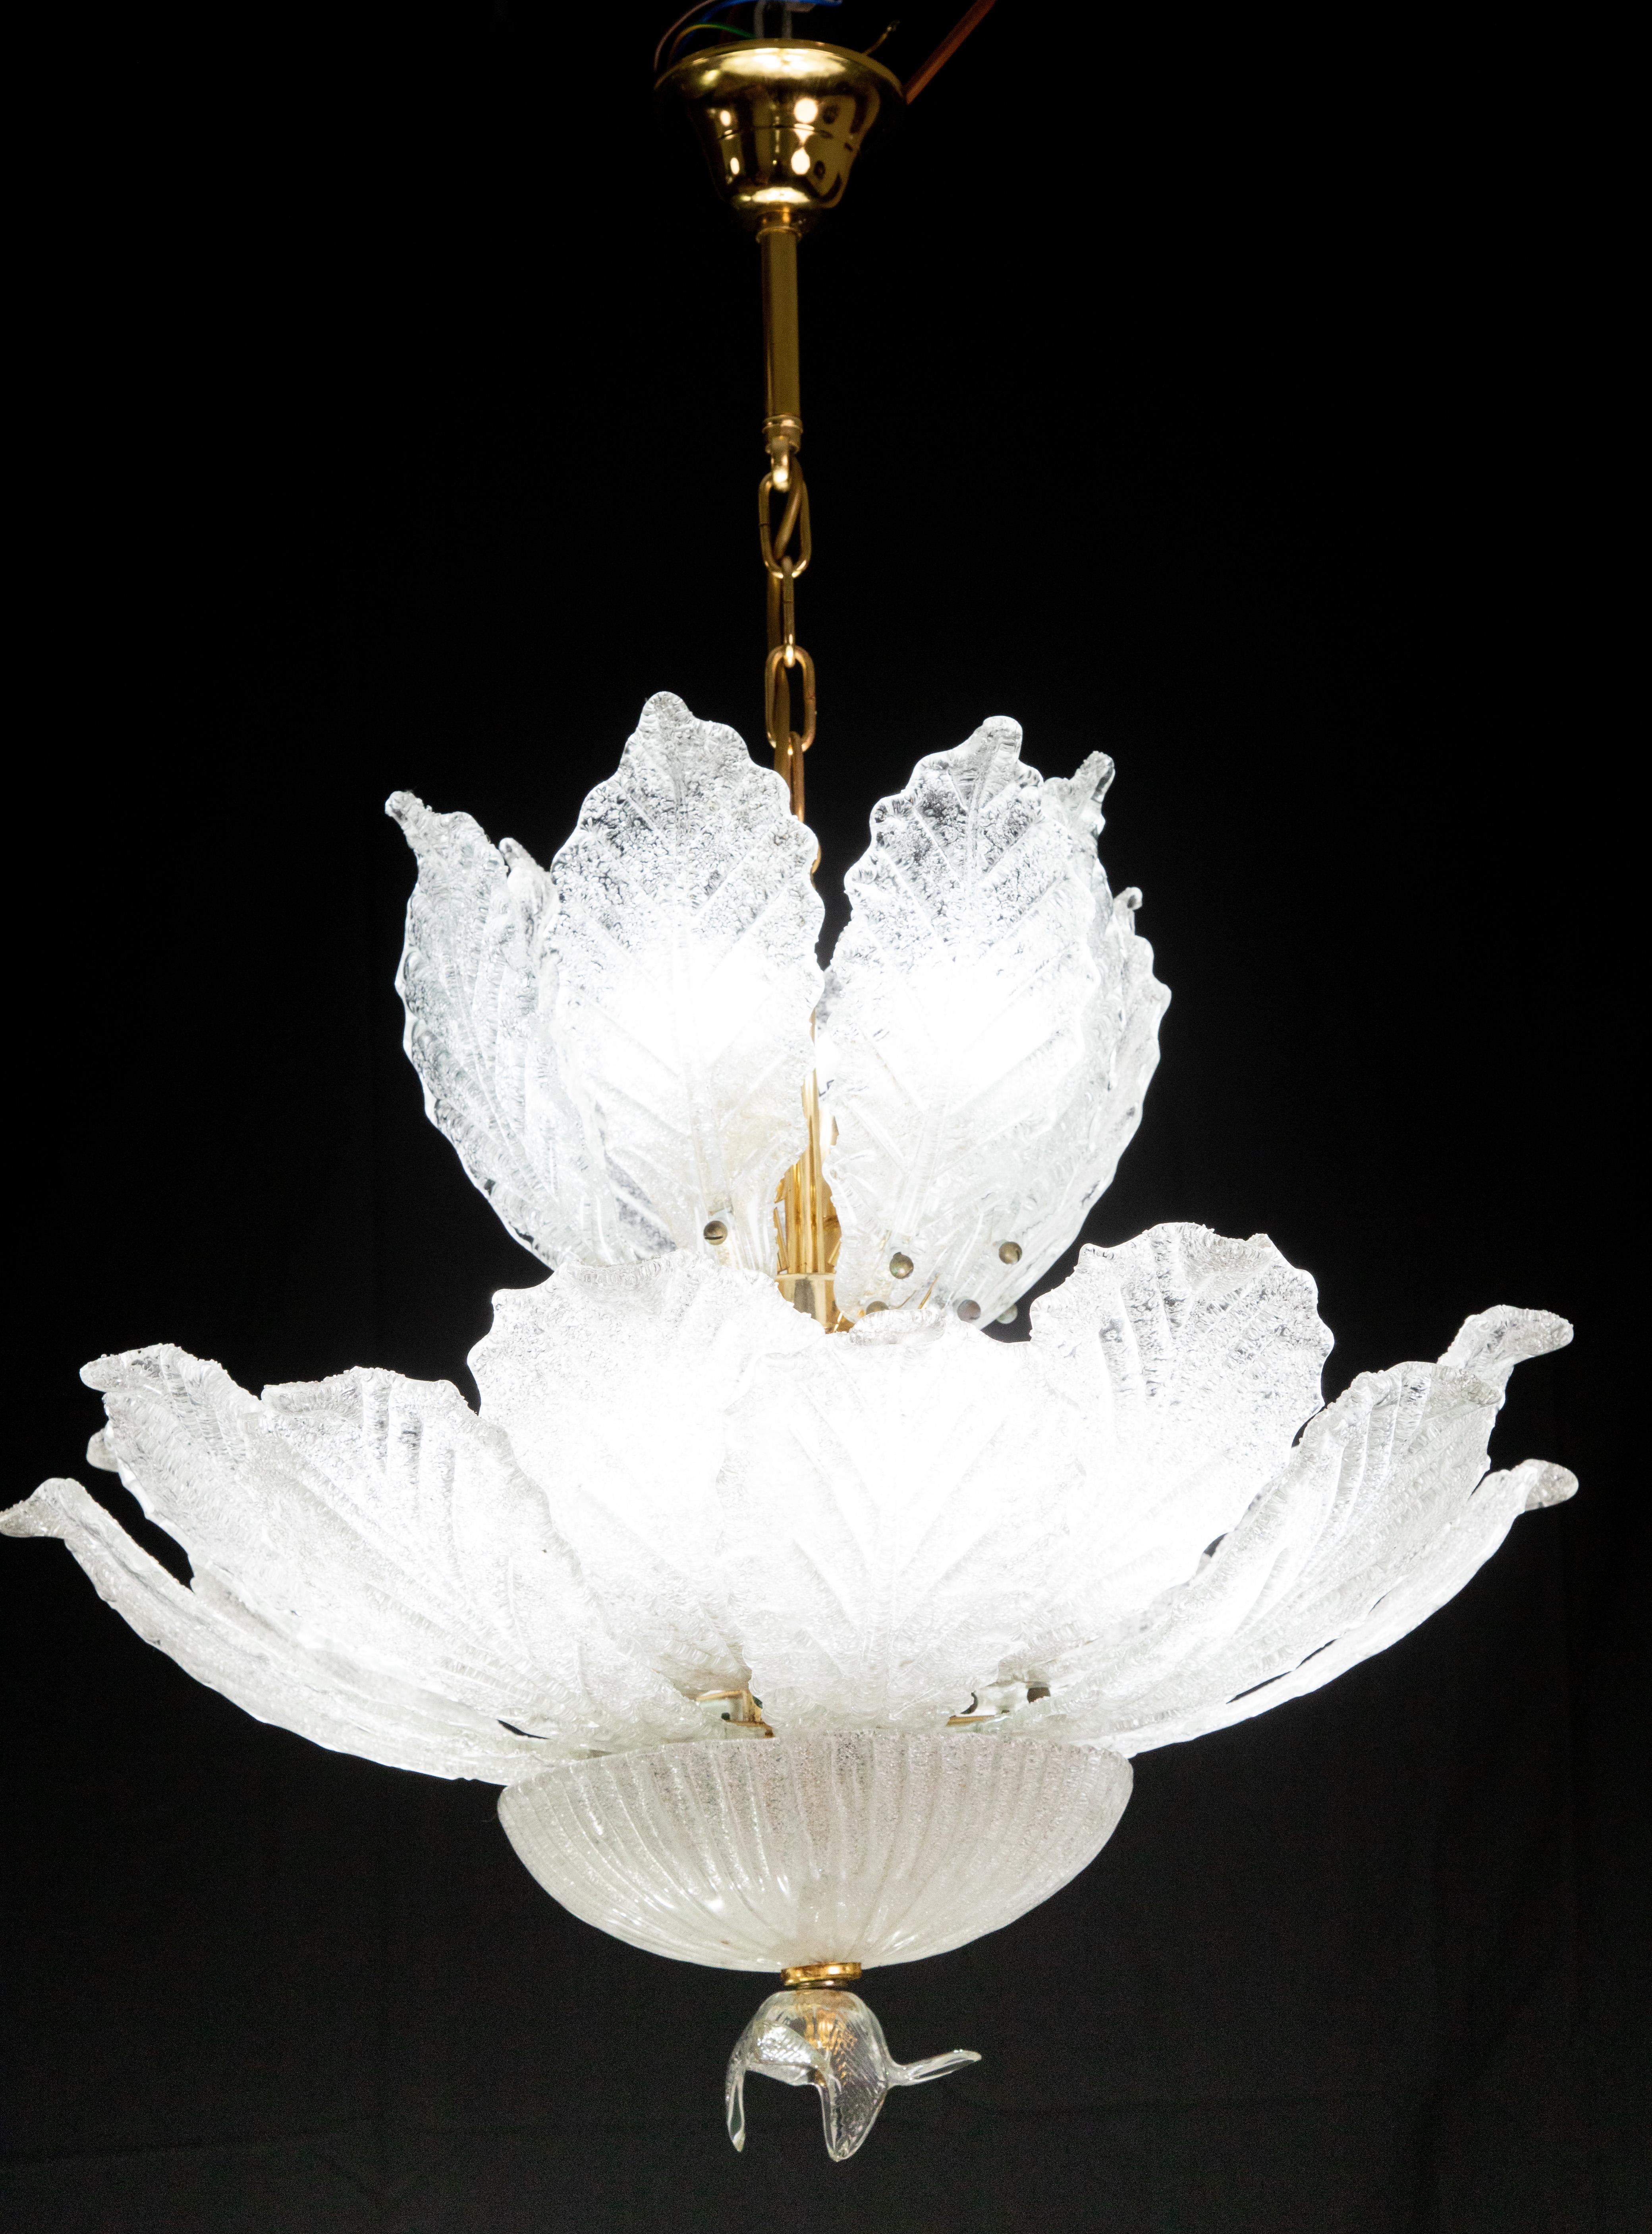 Splendide plafonnier en verre de Murano.

Période : vers 1970.

La lampe se monte sur 12 douilles européennes standard e14.

Parfait pour décorer un grand espace.

La hauteur est de 100 centimètres à partir du plafond, le diamètre est d'environ 65